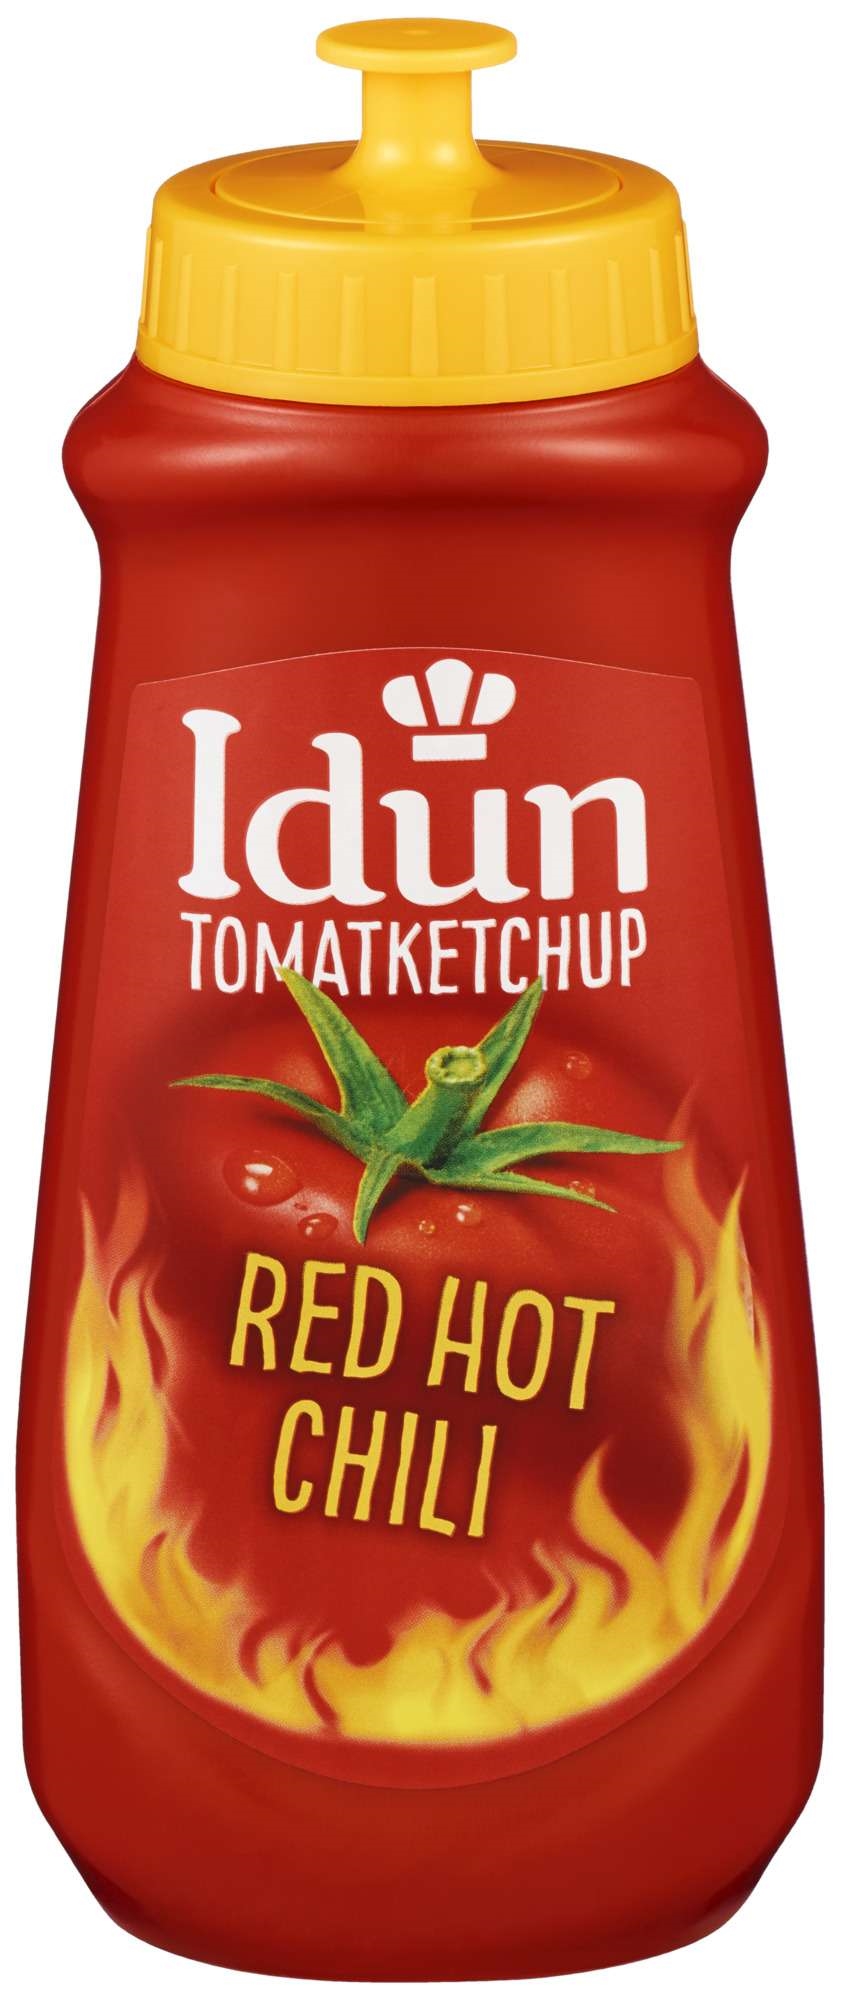 Tomatketchup hot chili            530g